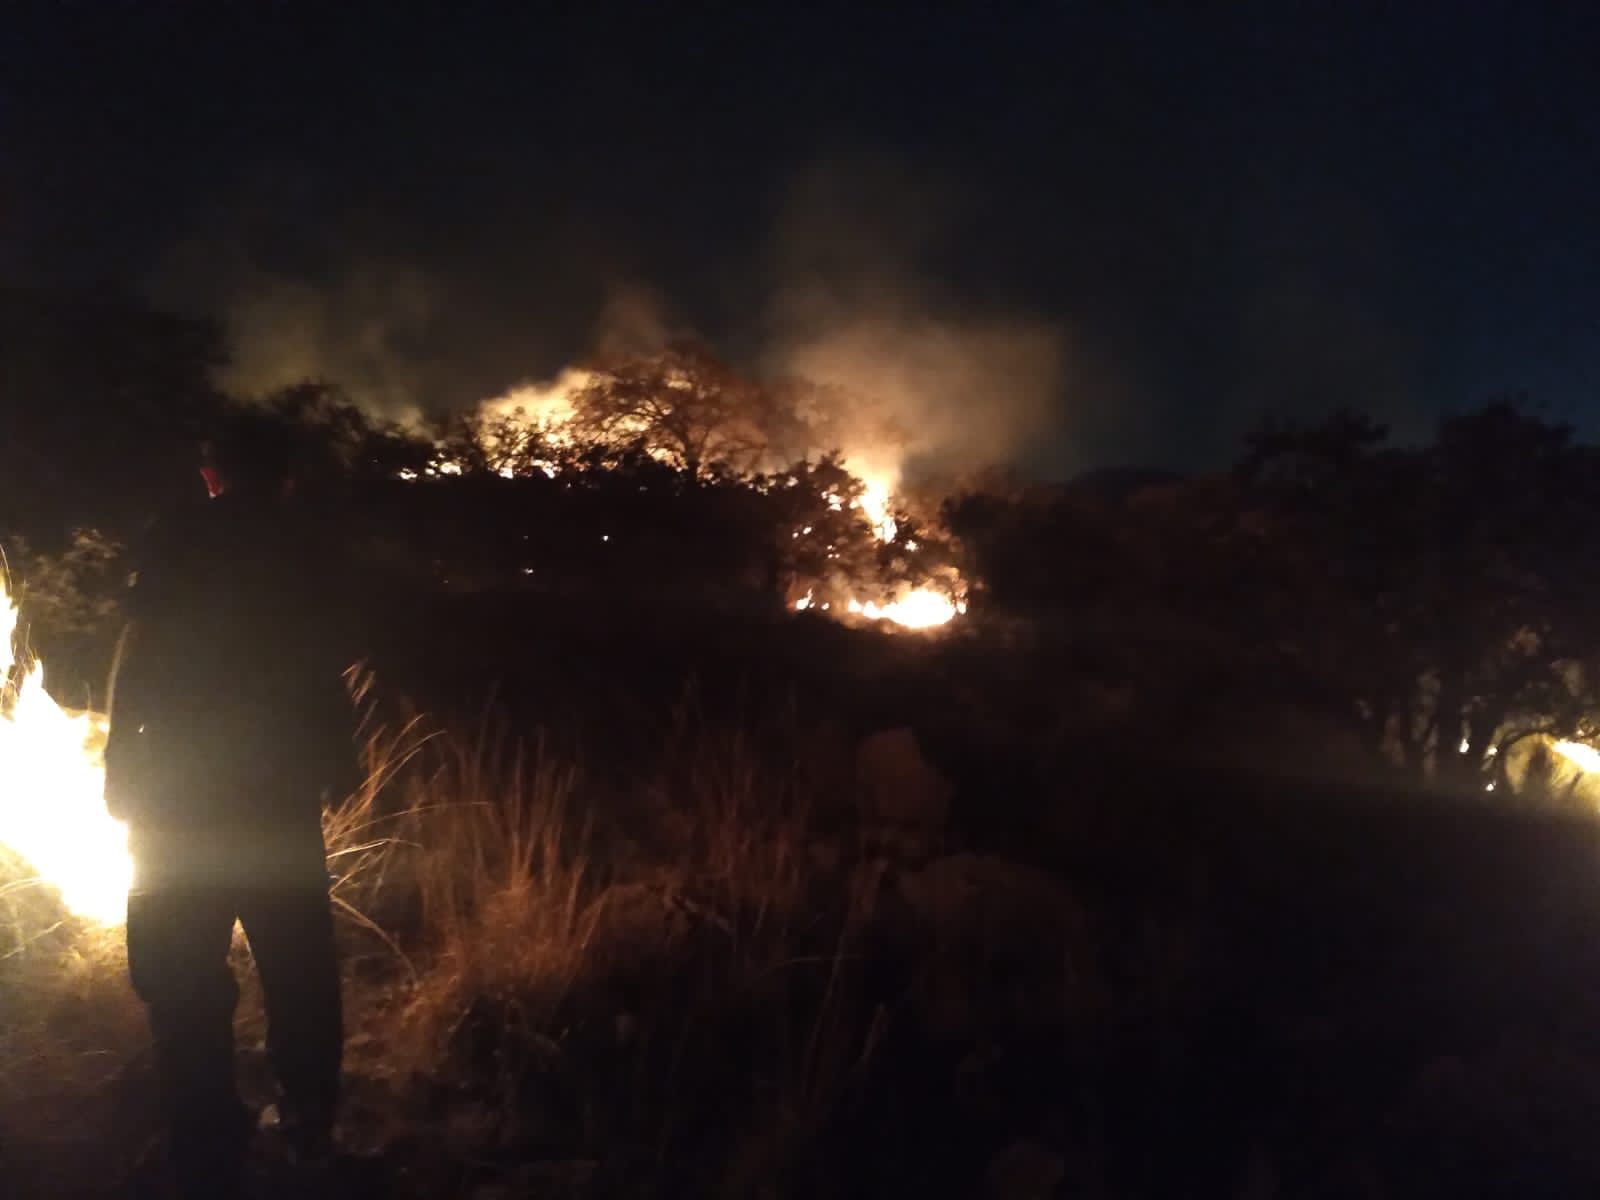  En coordinación con otras instancias, Protección Civil Municipal termina con incendio forestal en el Cerro el Pelón